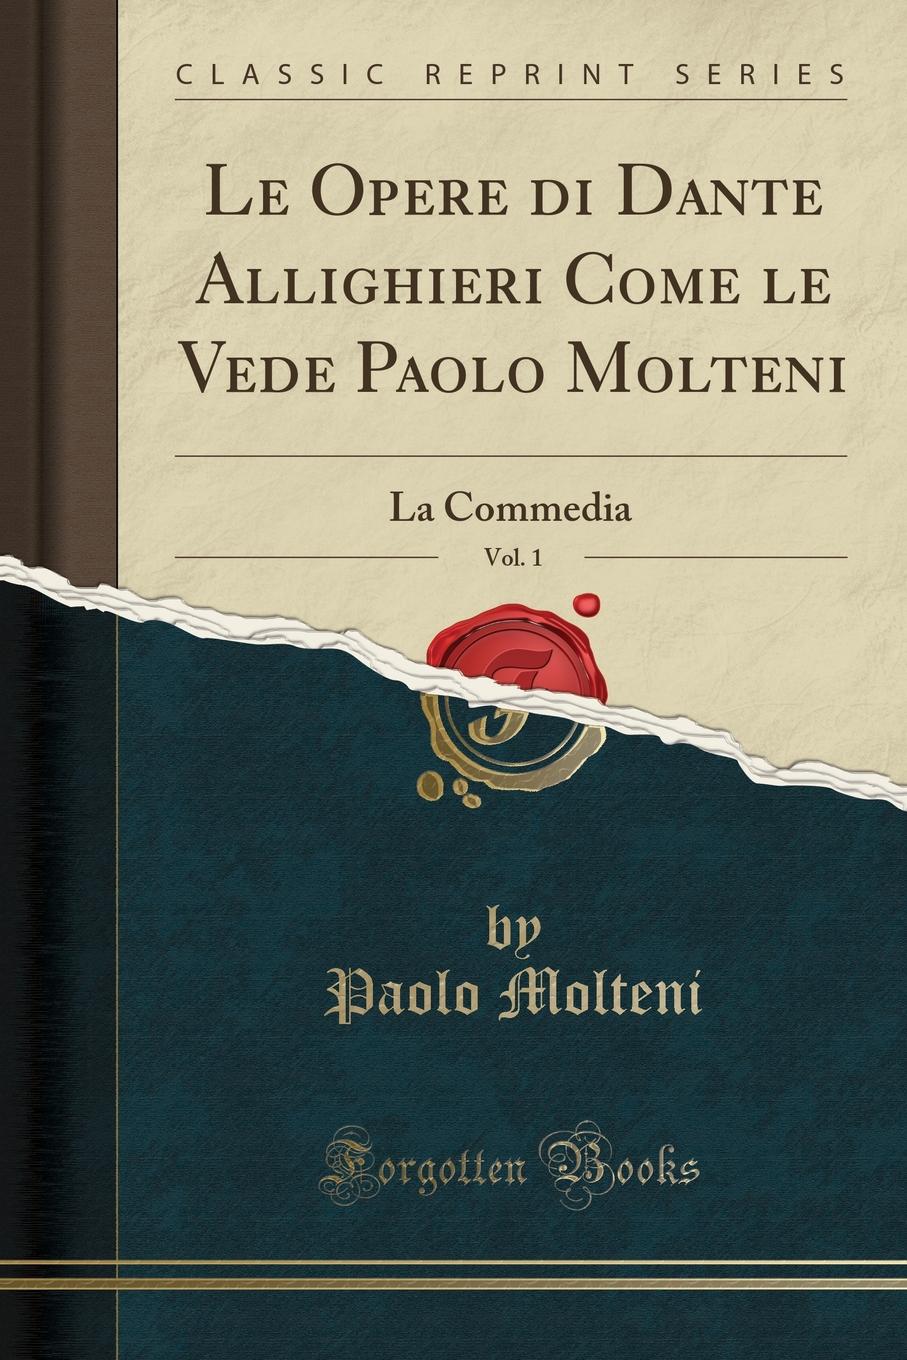 Paolo Molteni Le Opere di Dante Allighieri Come le Vede Paolo Molteni, Vol. 1. La Commedia (Classic Reprint)